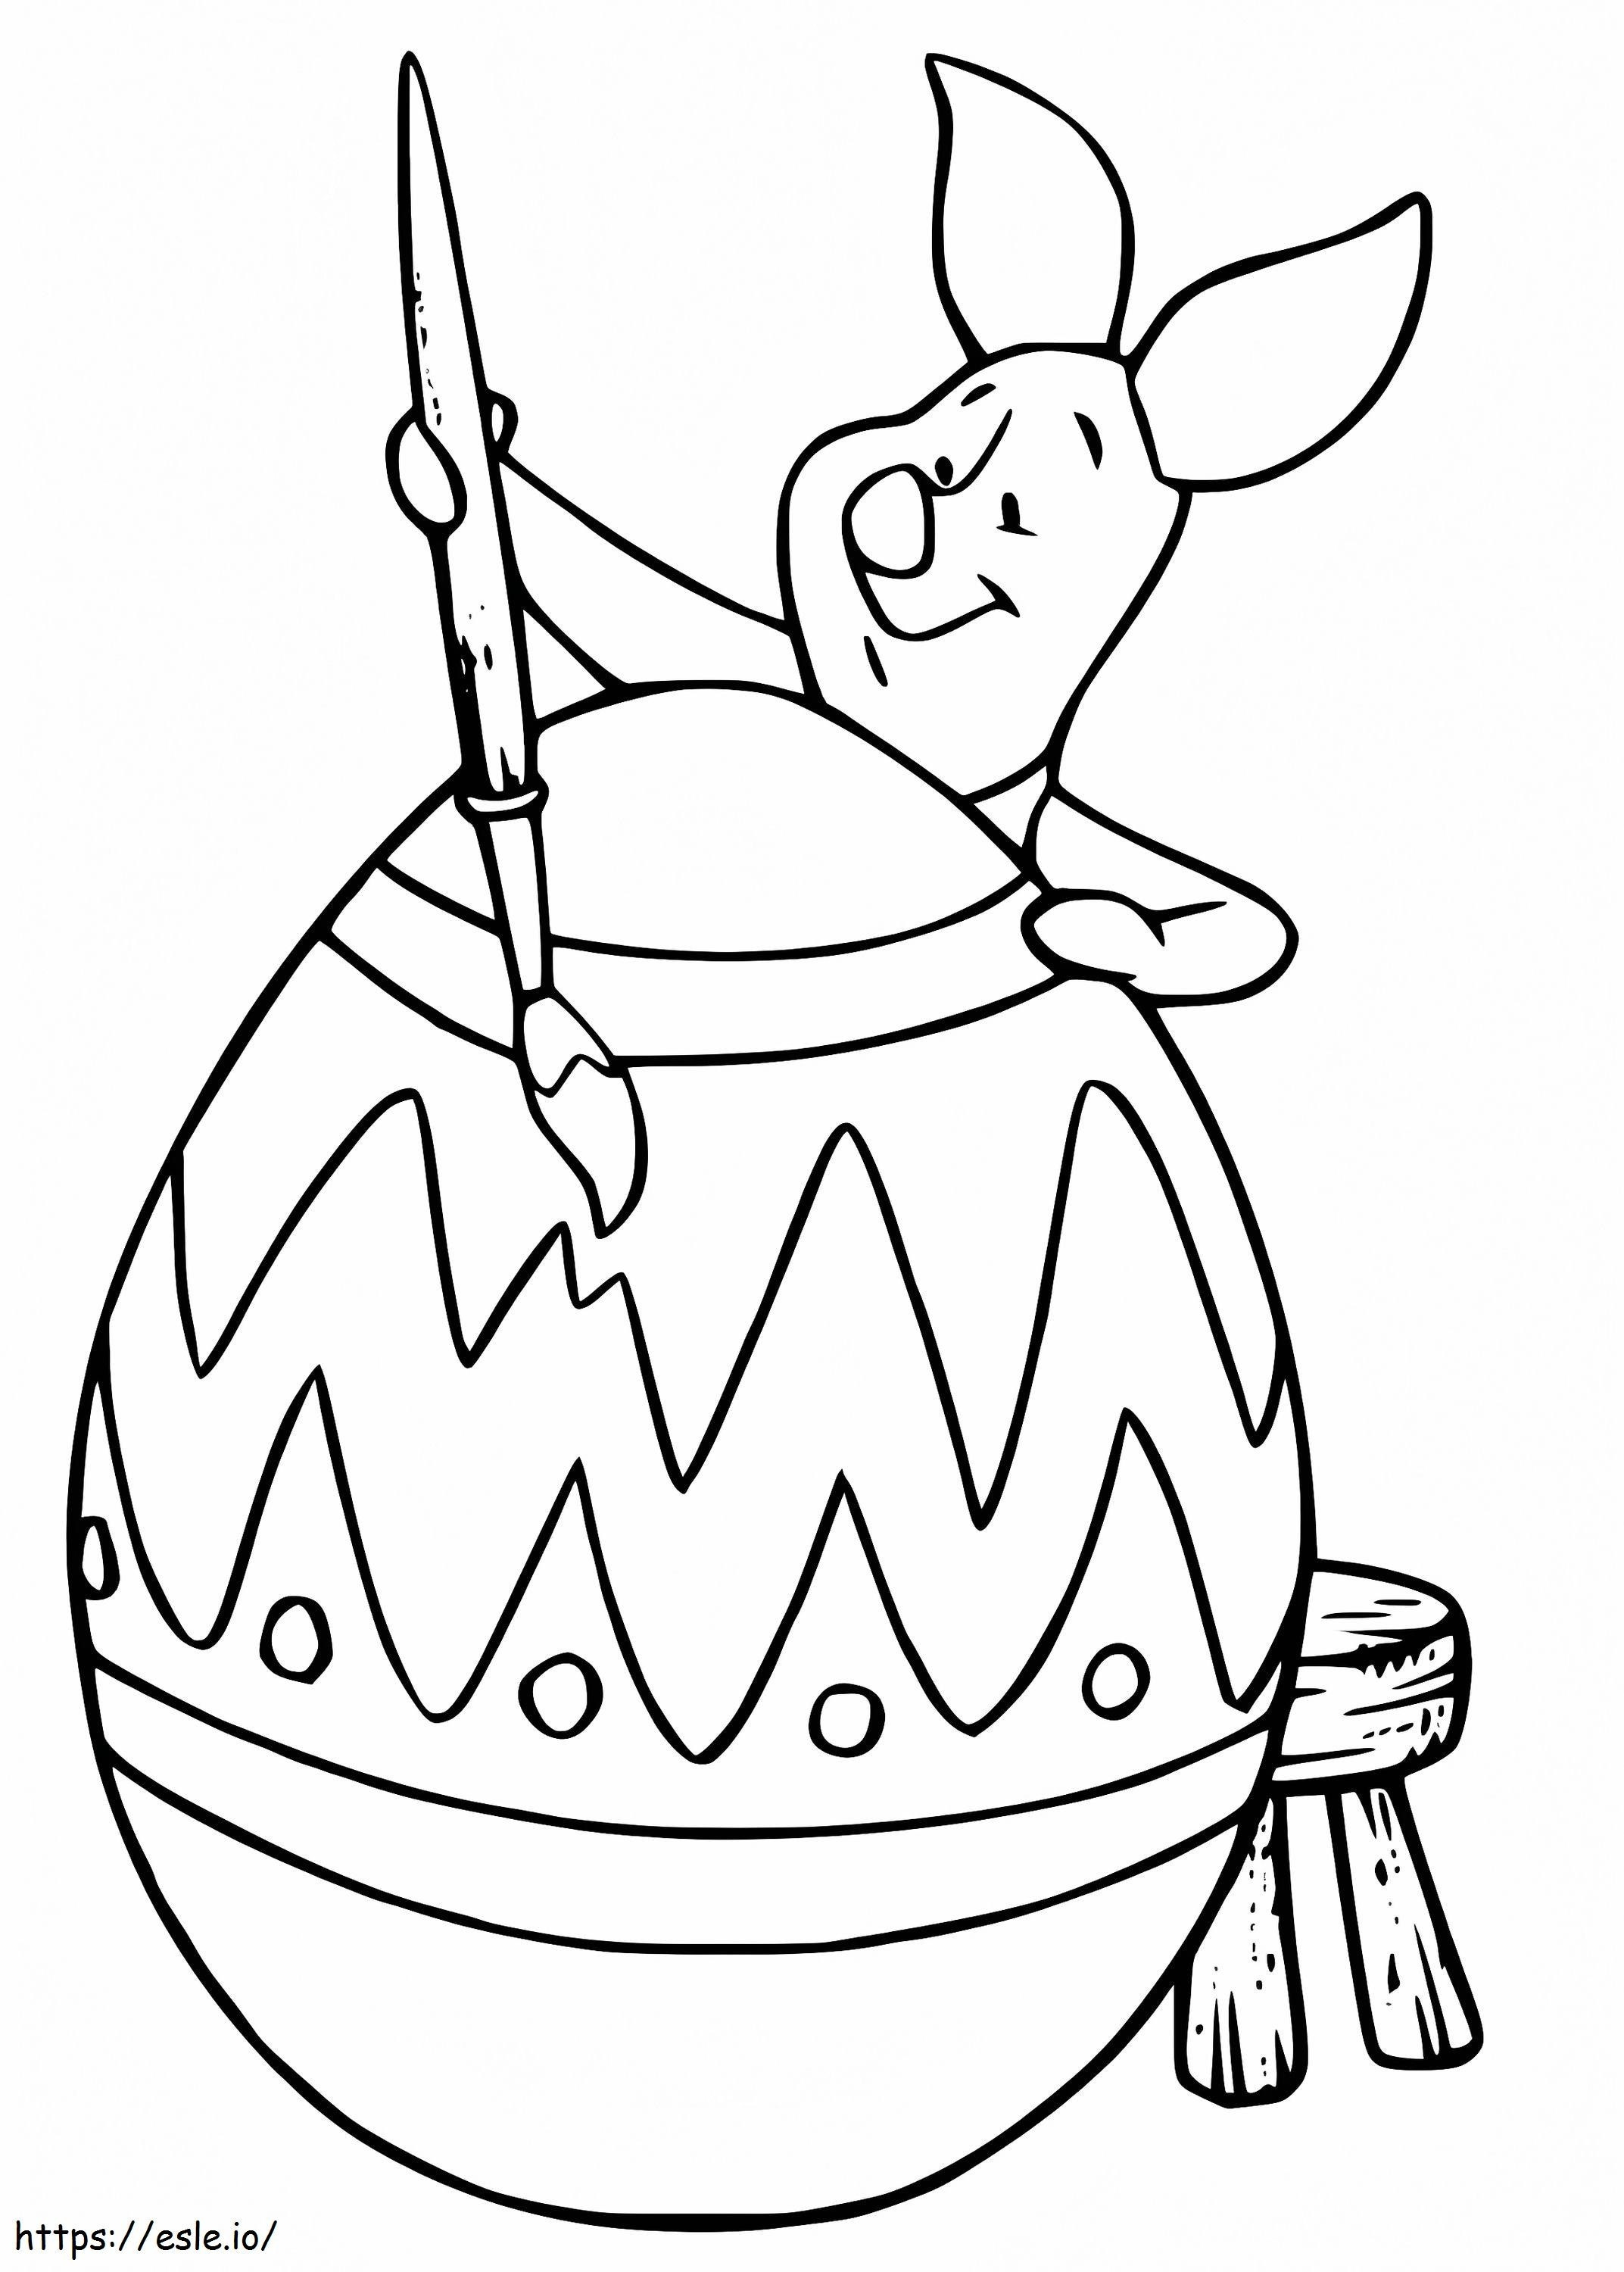 Lechón pintando huevo de Pascua para colorear